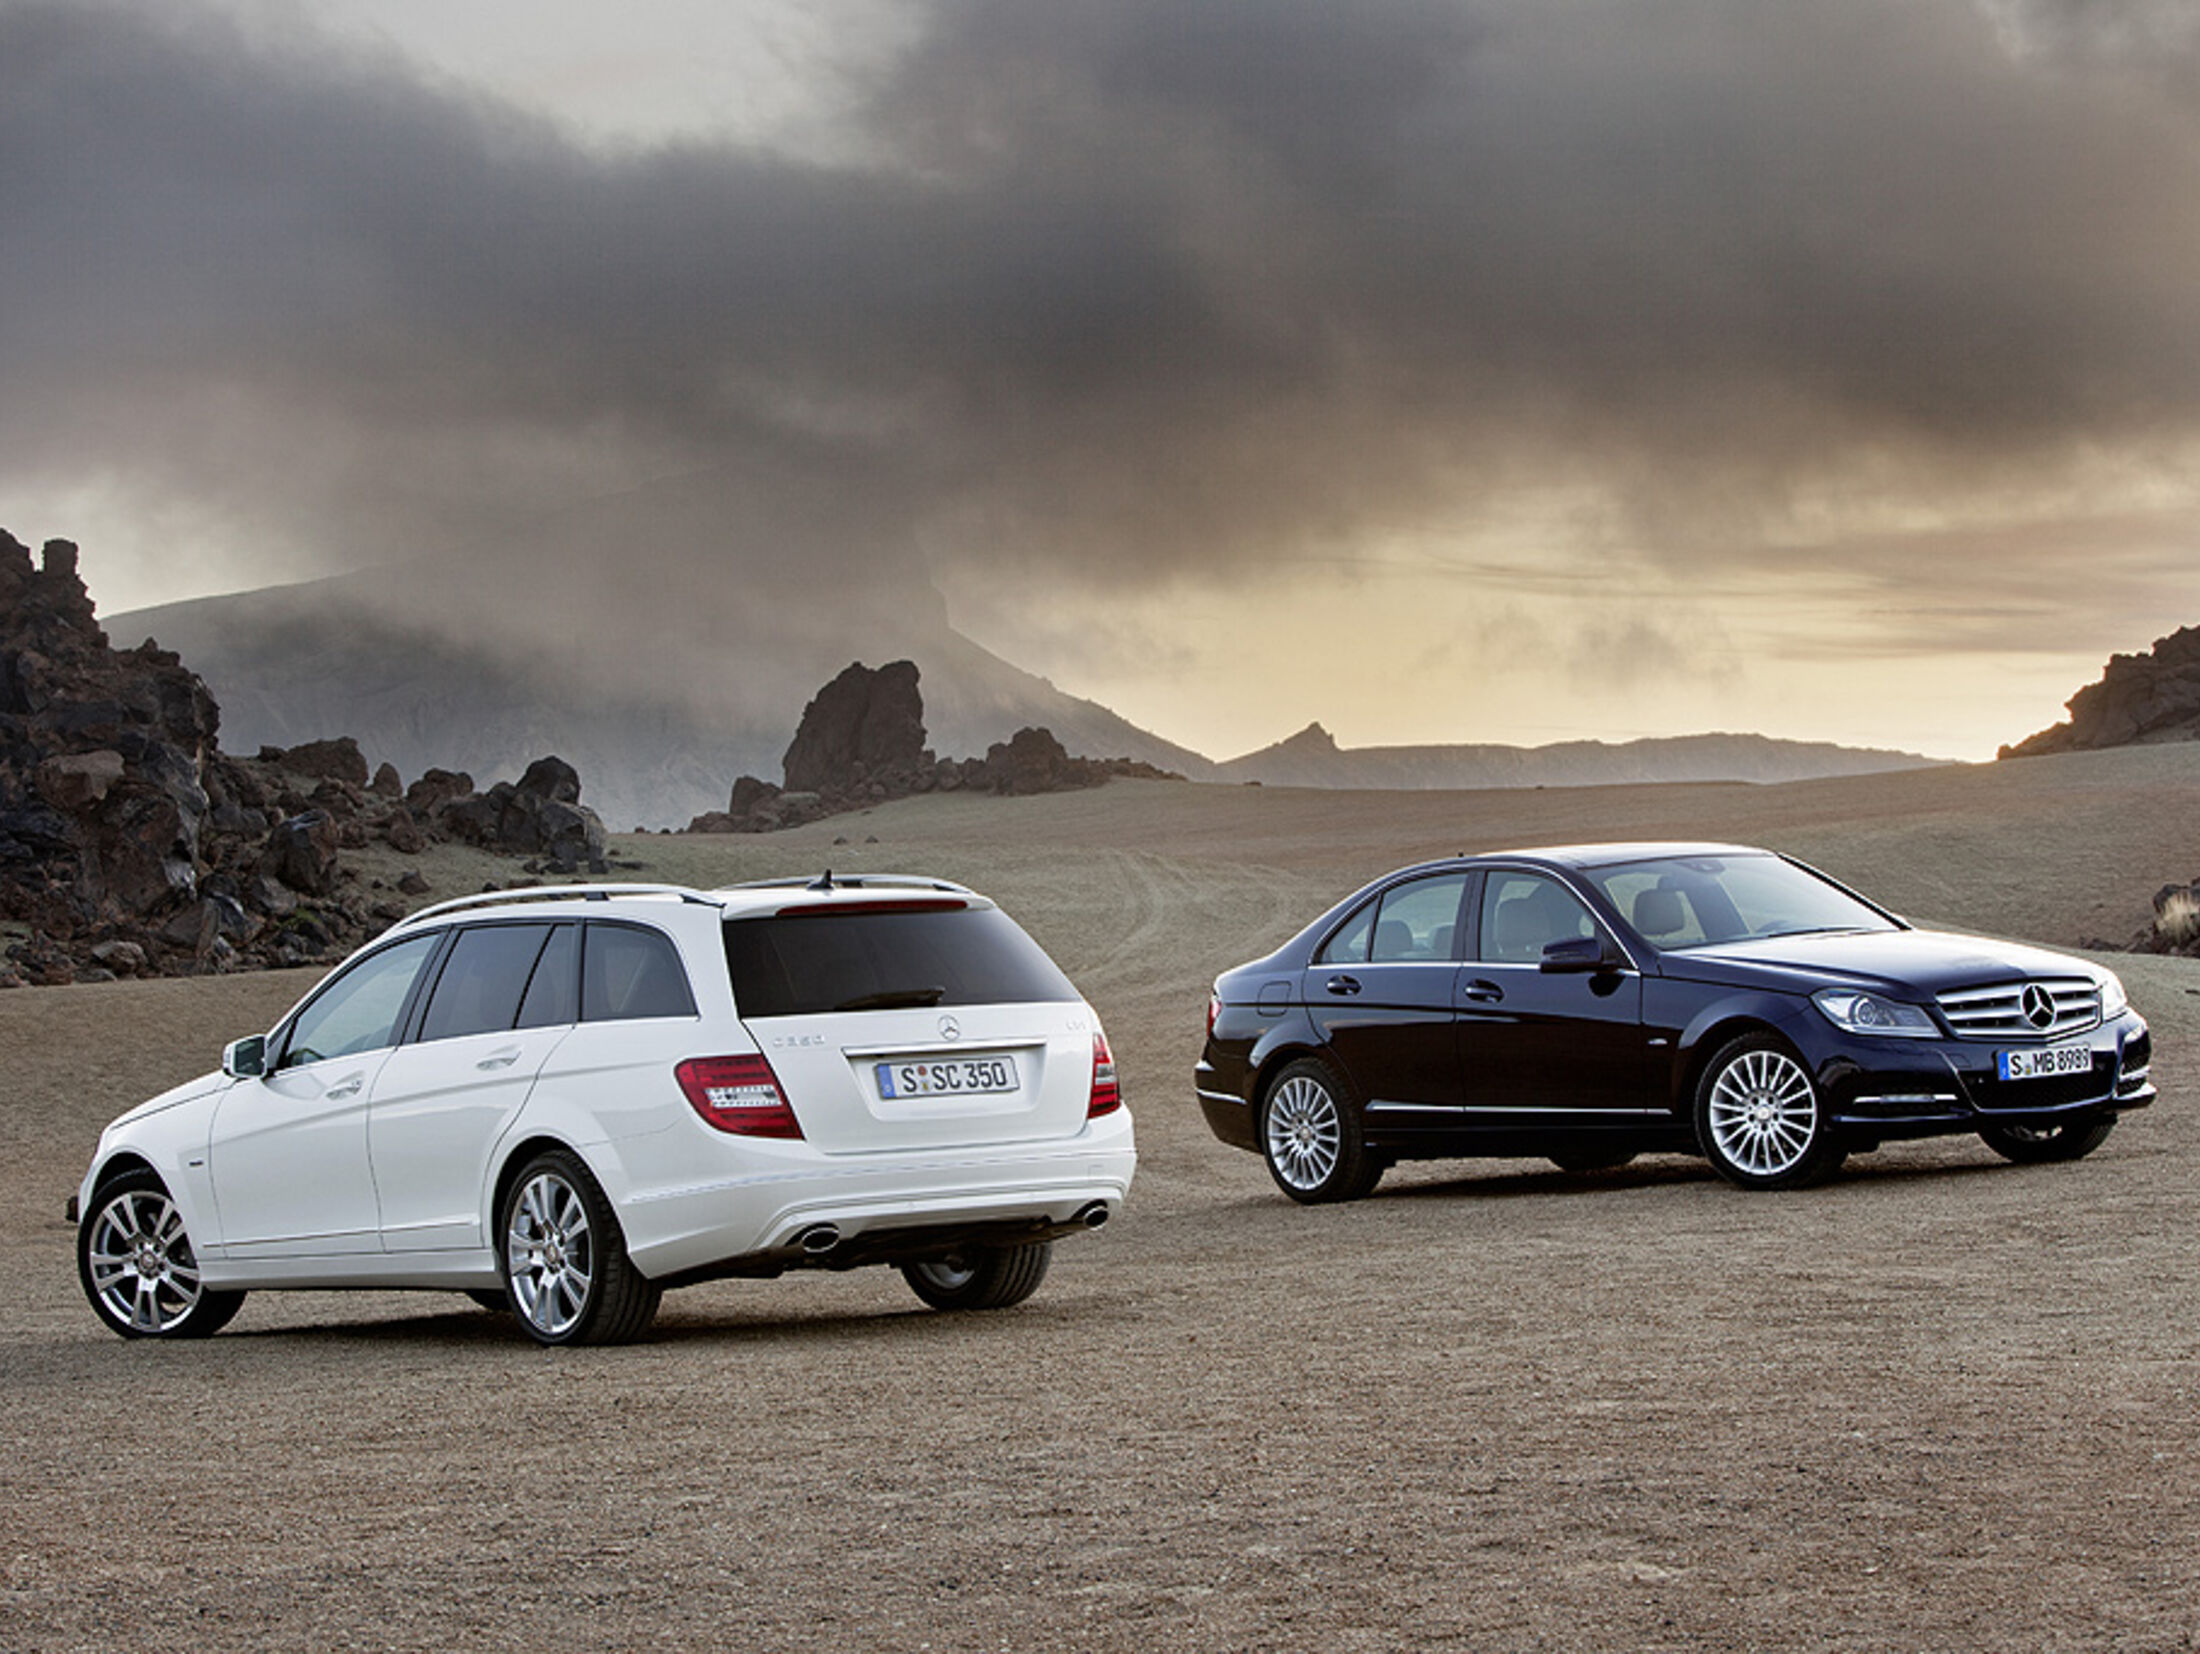 https://imgr1.auto-motor-und-sport.de/Mercedes-C-Klasse-Facelift-T-Modell-Limousine--jsonLd4x3-ce5a8219-441229.jpg